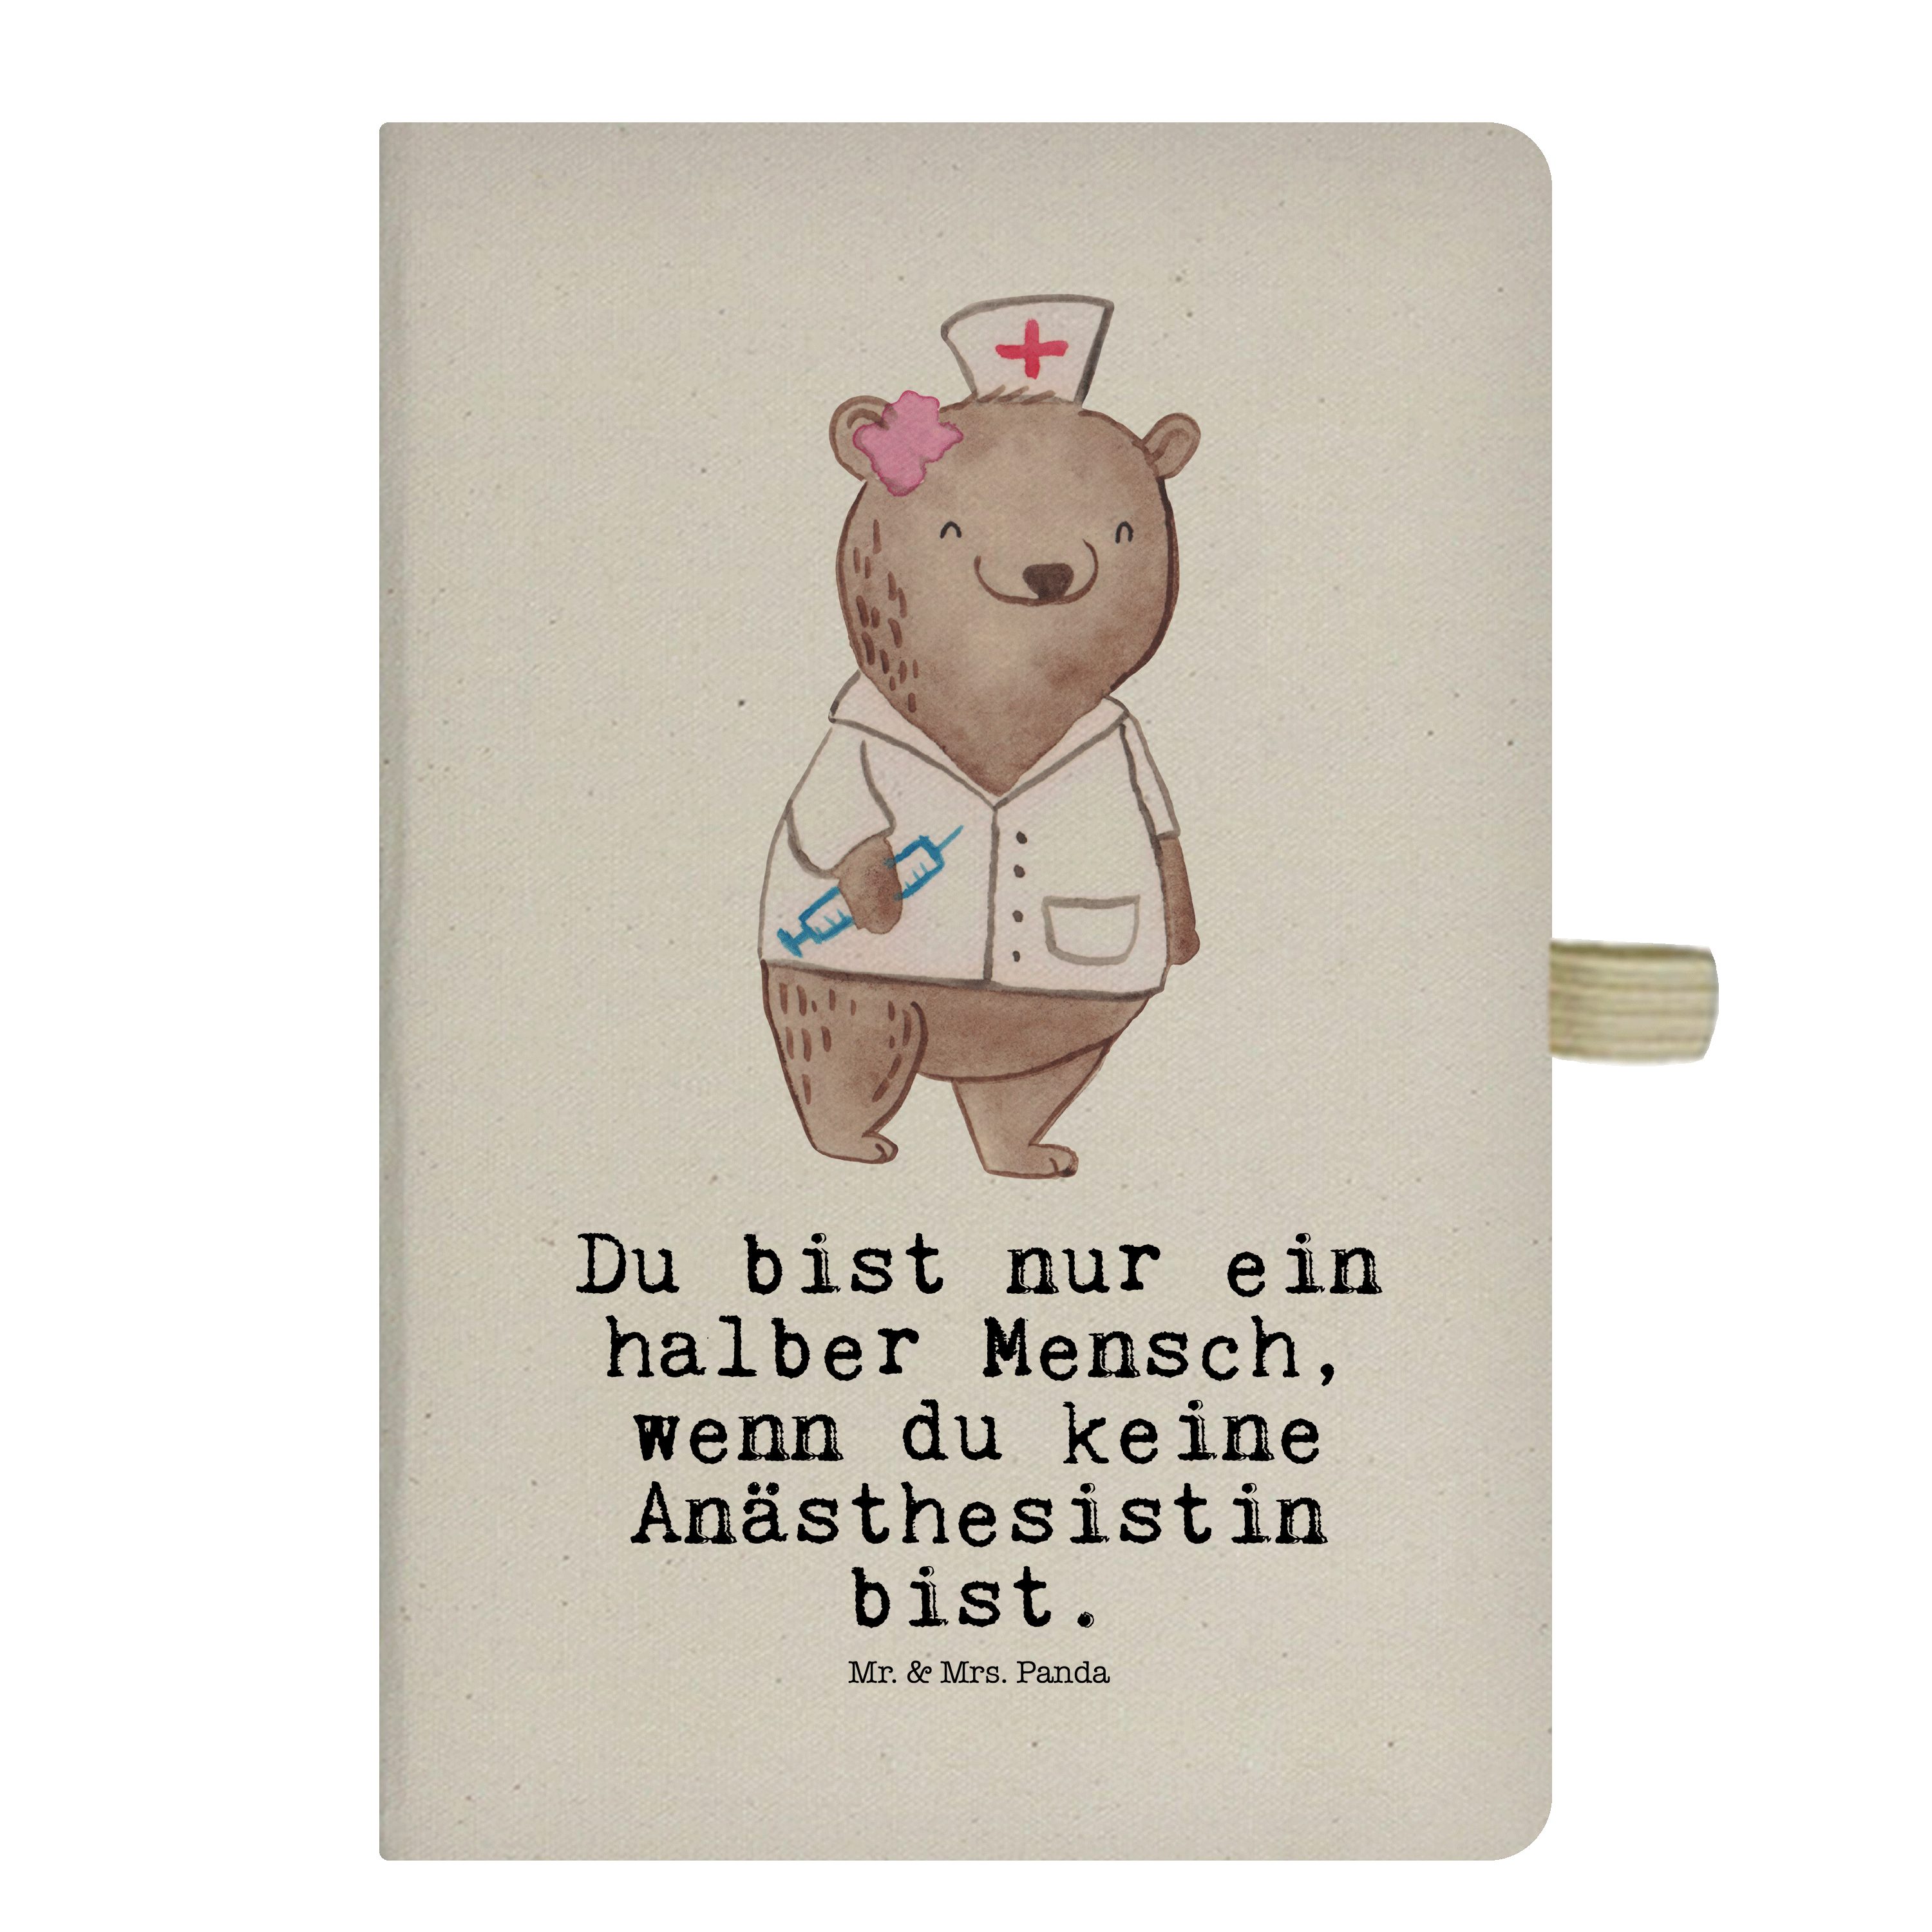 Mr. & Mrs. Panda Notizbuch Anästhesistin mit Herz - Transparent - Geschenk, Krankenhaus, Notizbl Mr. & Mrs. Panda